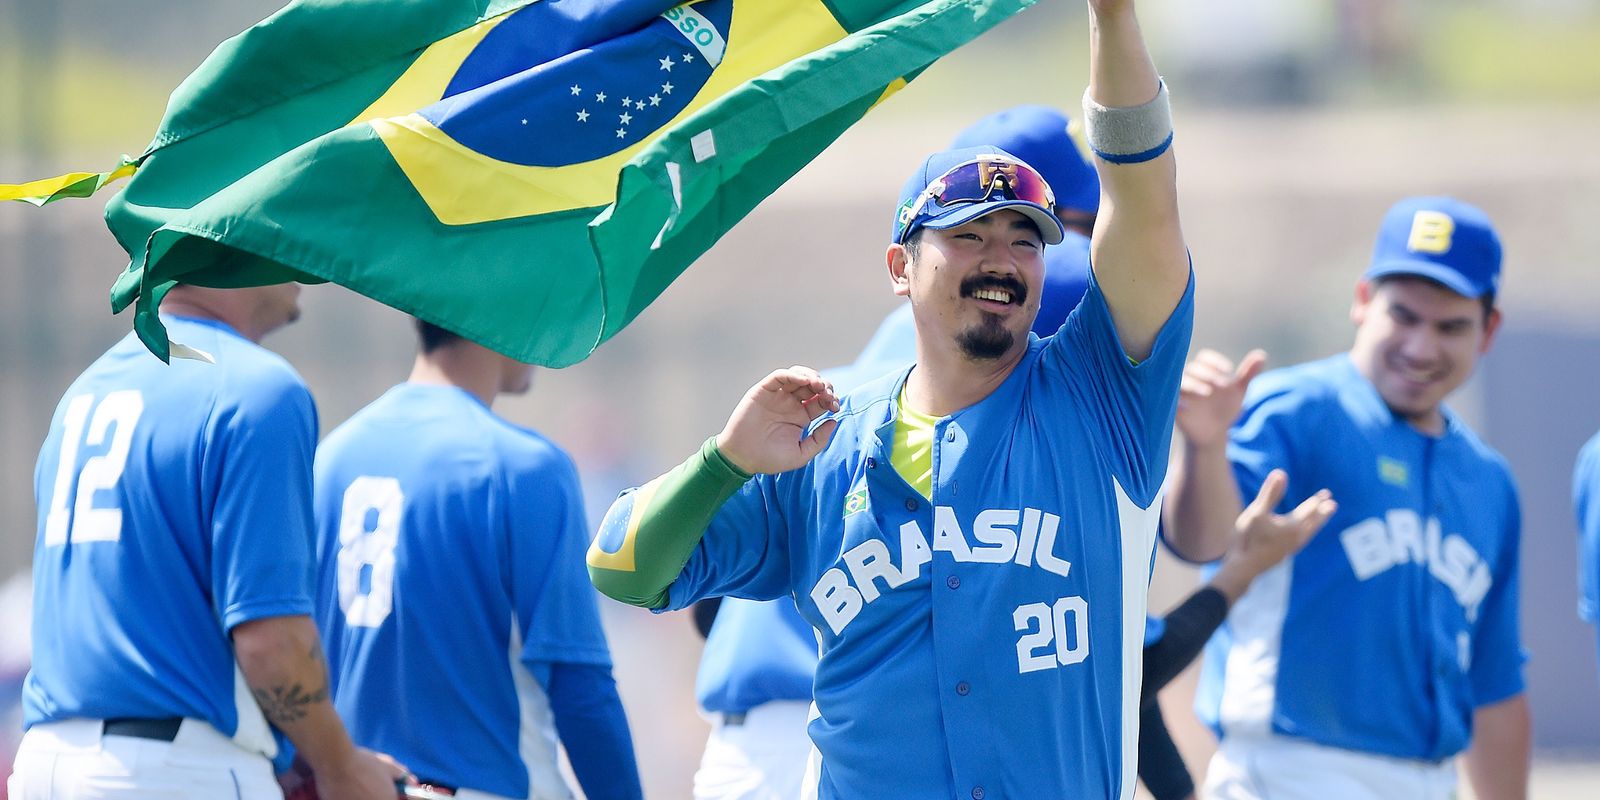 Beisebol: latinos continuam sendo fundamentais para o passatempo